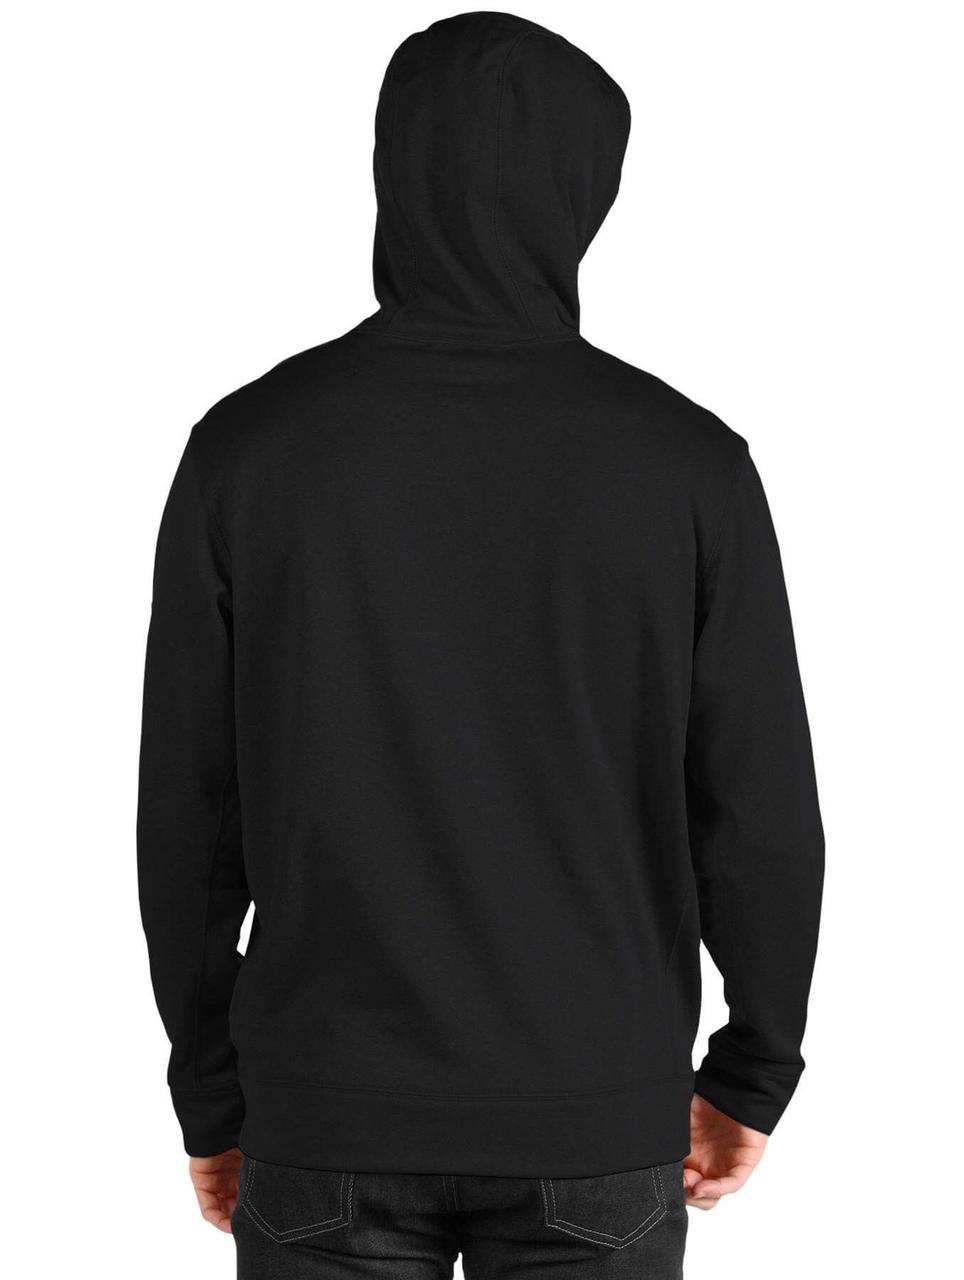 Plain Black Hoodie - Swag Shirts